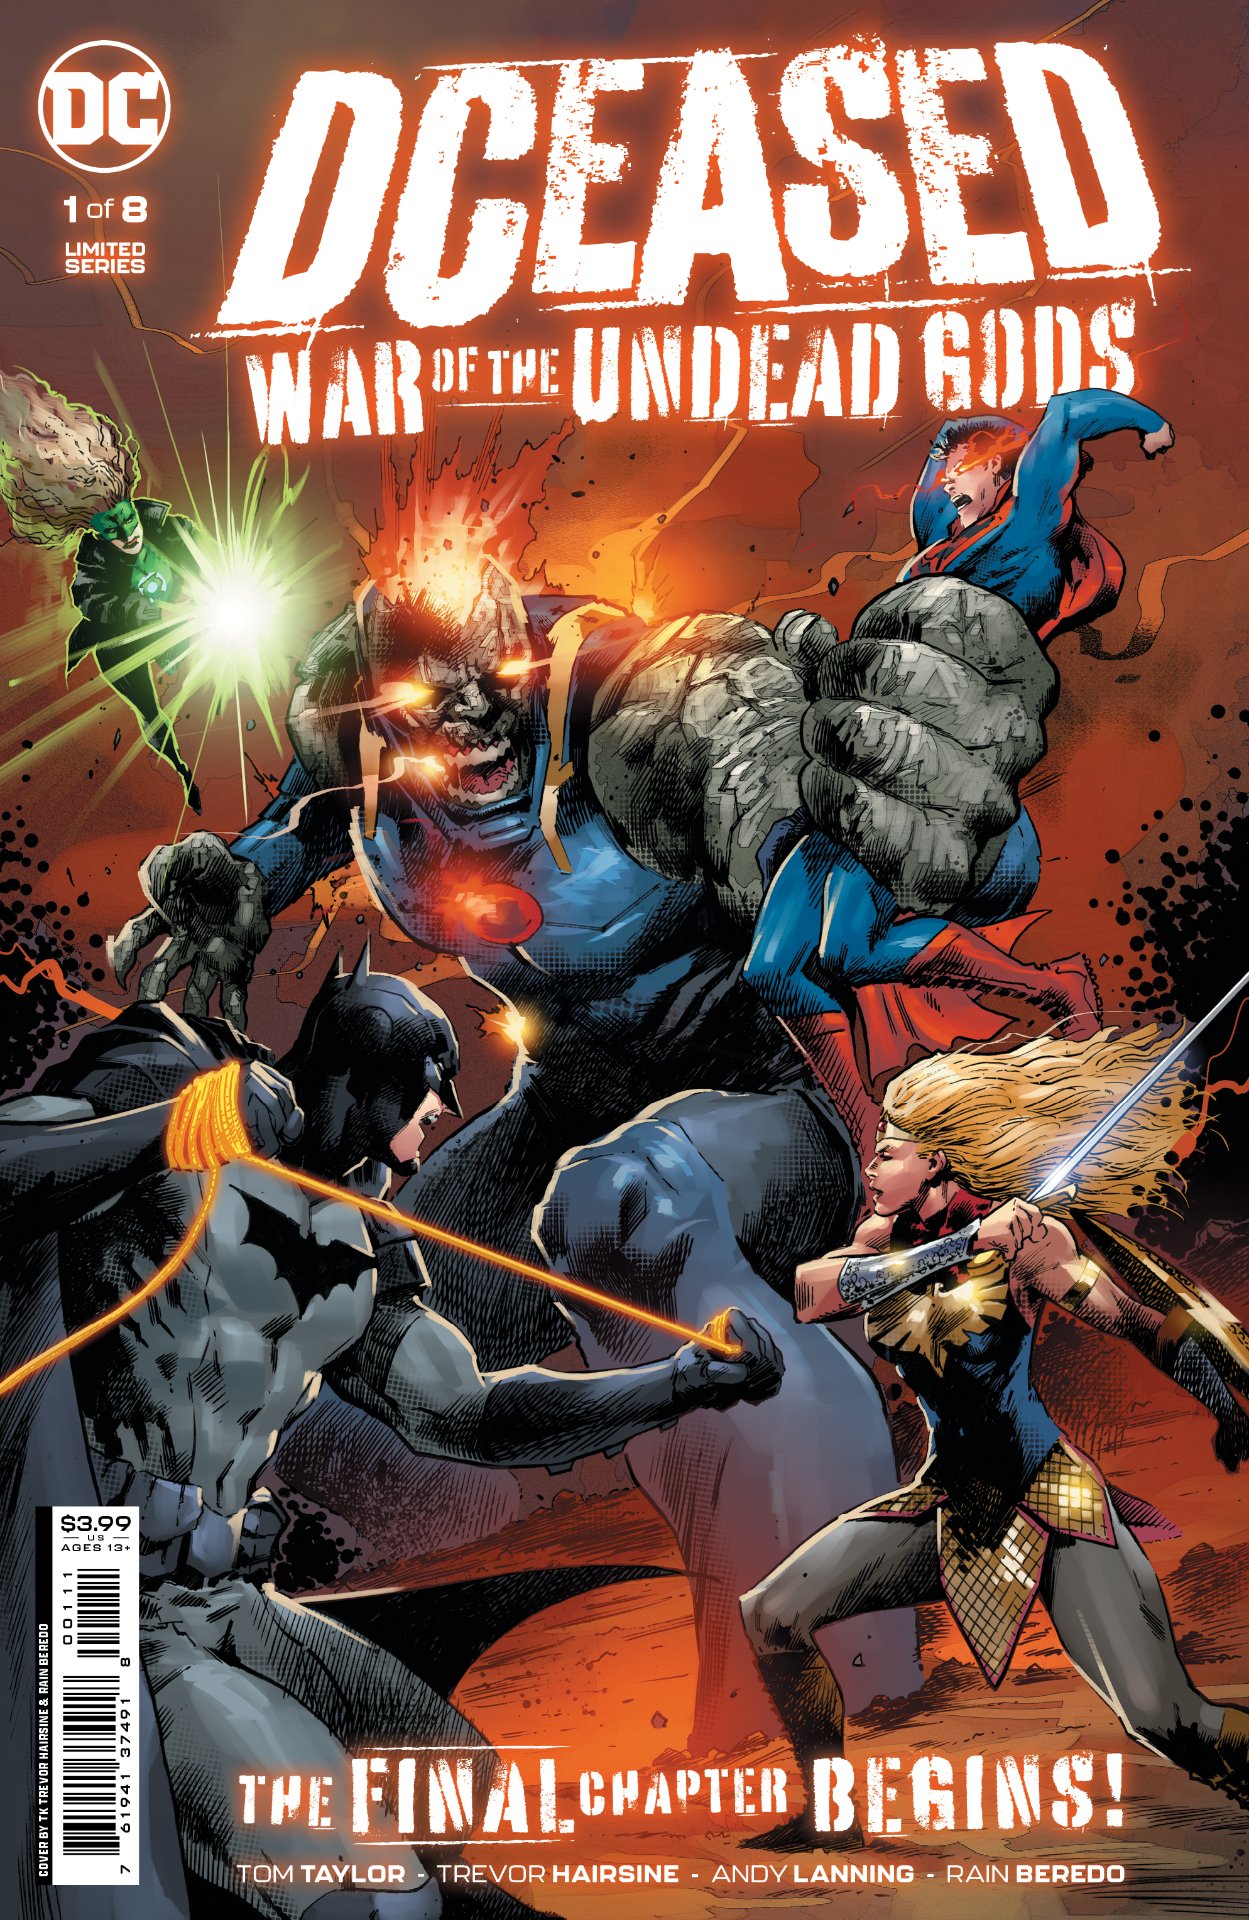 DCeased: Guerra de los Dioses No Muertos